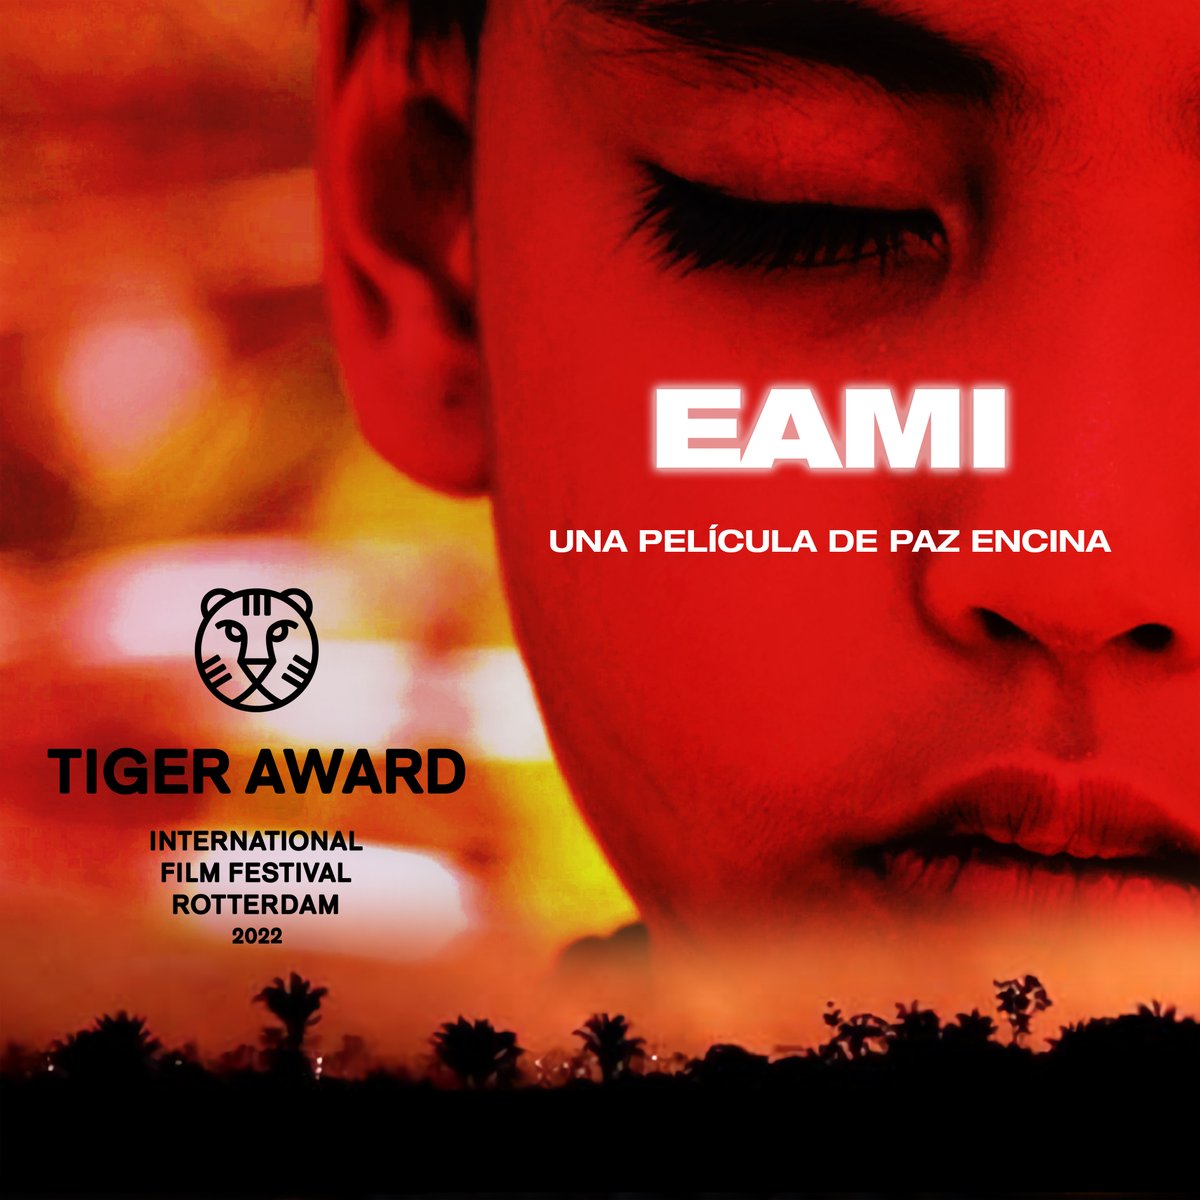 Cine nacional: la película EAMI triunfa en el Festival de Róterdam imagen